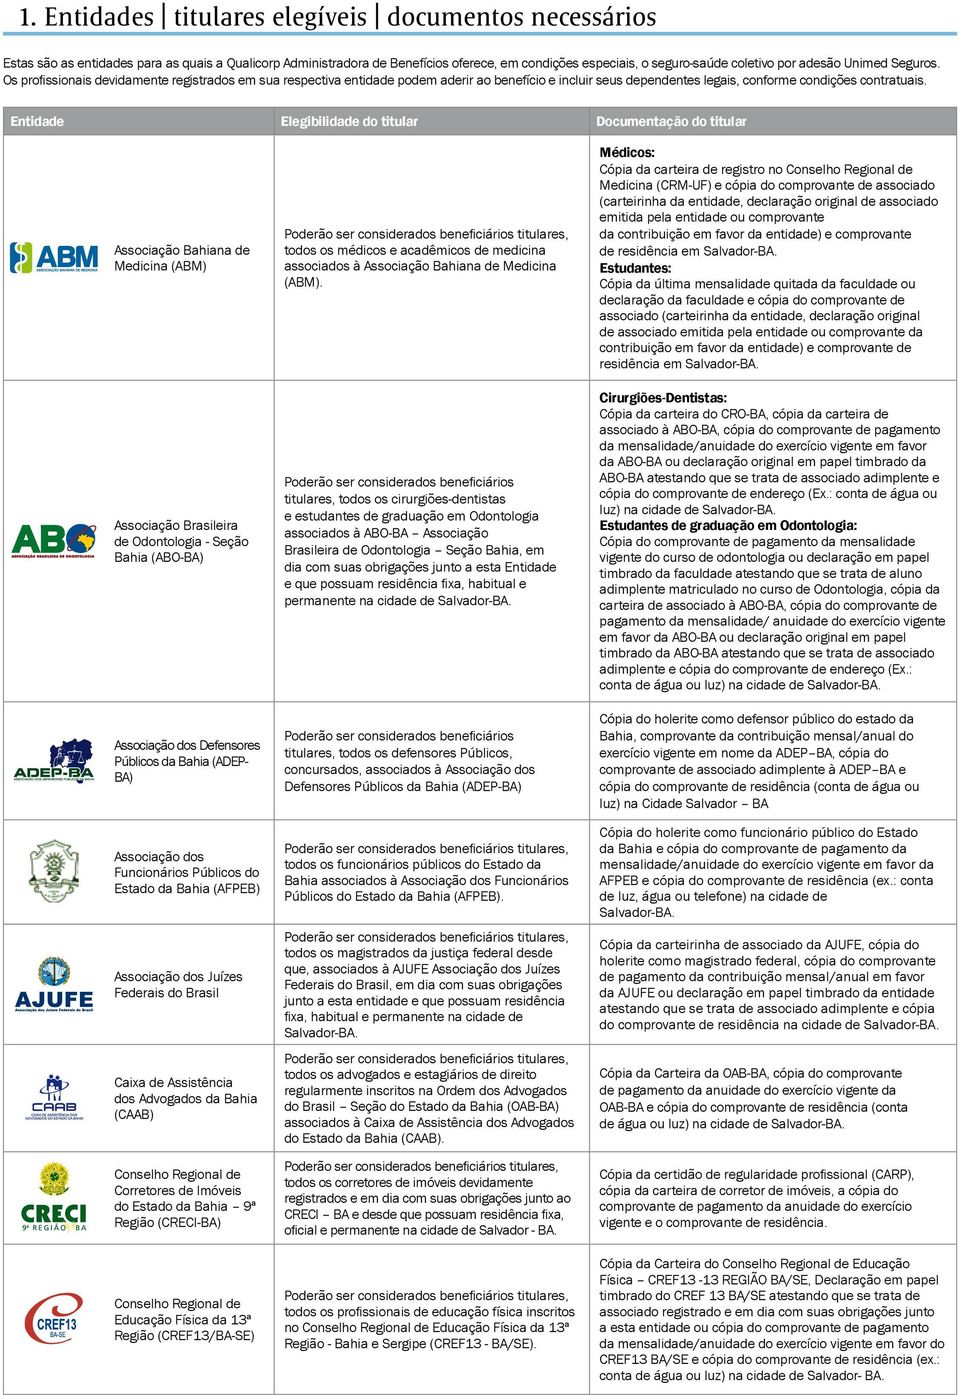 Entidade Elegibilidade do titular Documentação do titular Associação Bahiana de Medicina (ABM) Associação Brasileira de Odontologia - Seção Bahia (ABO-BA) Associação dos Defensores Públicos da Bahia